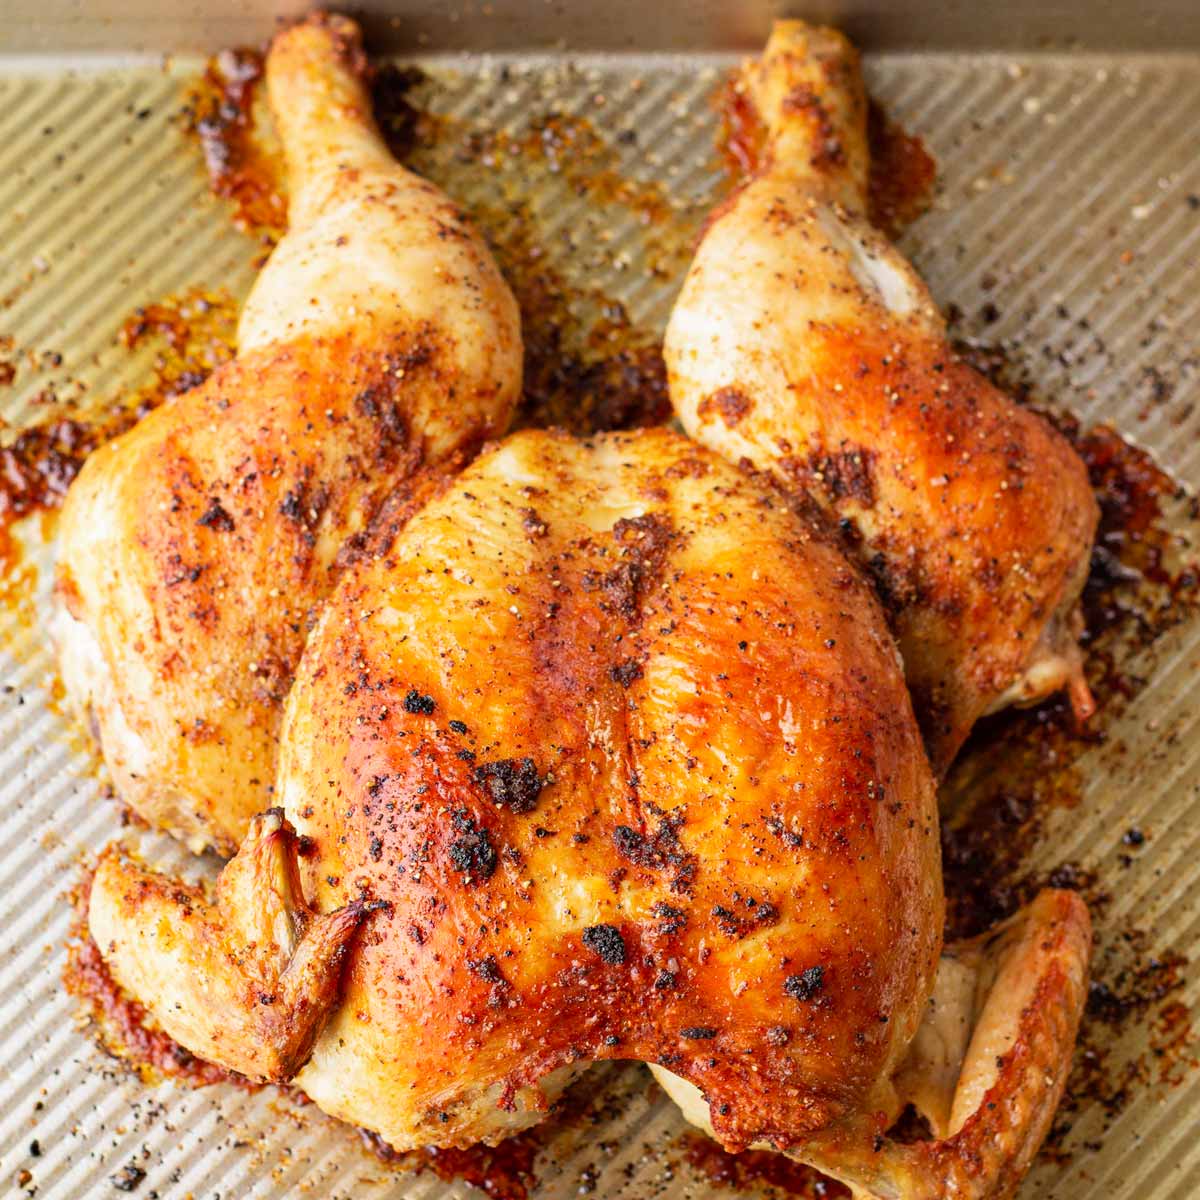 https://cookingformysoul.com/wp-content/uploads/2020/03/spatchcock-chicken-feat.jpg